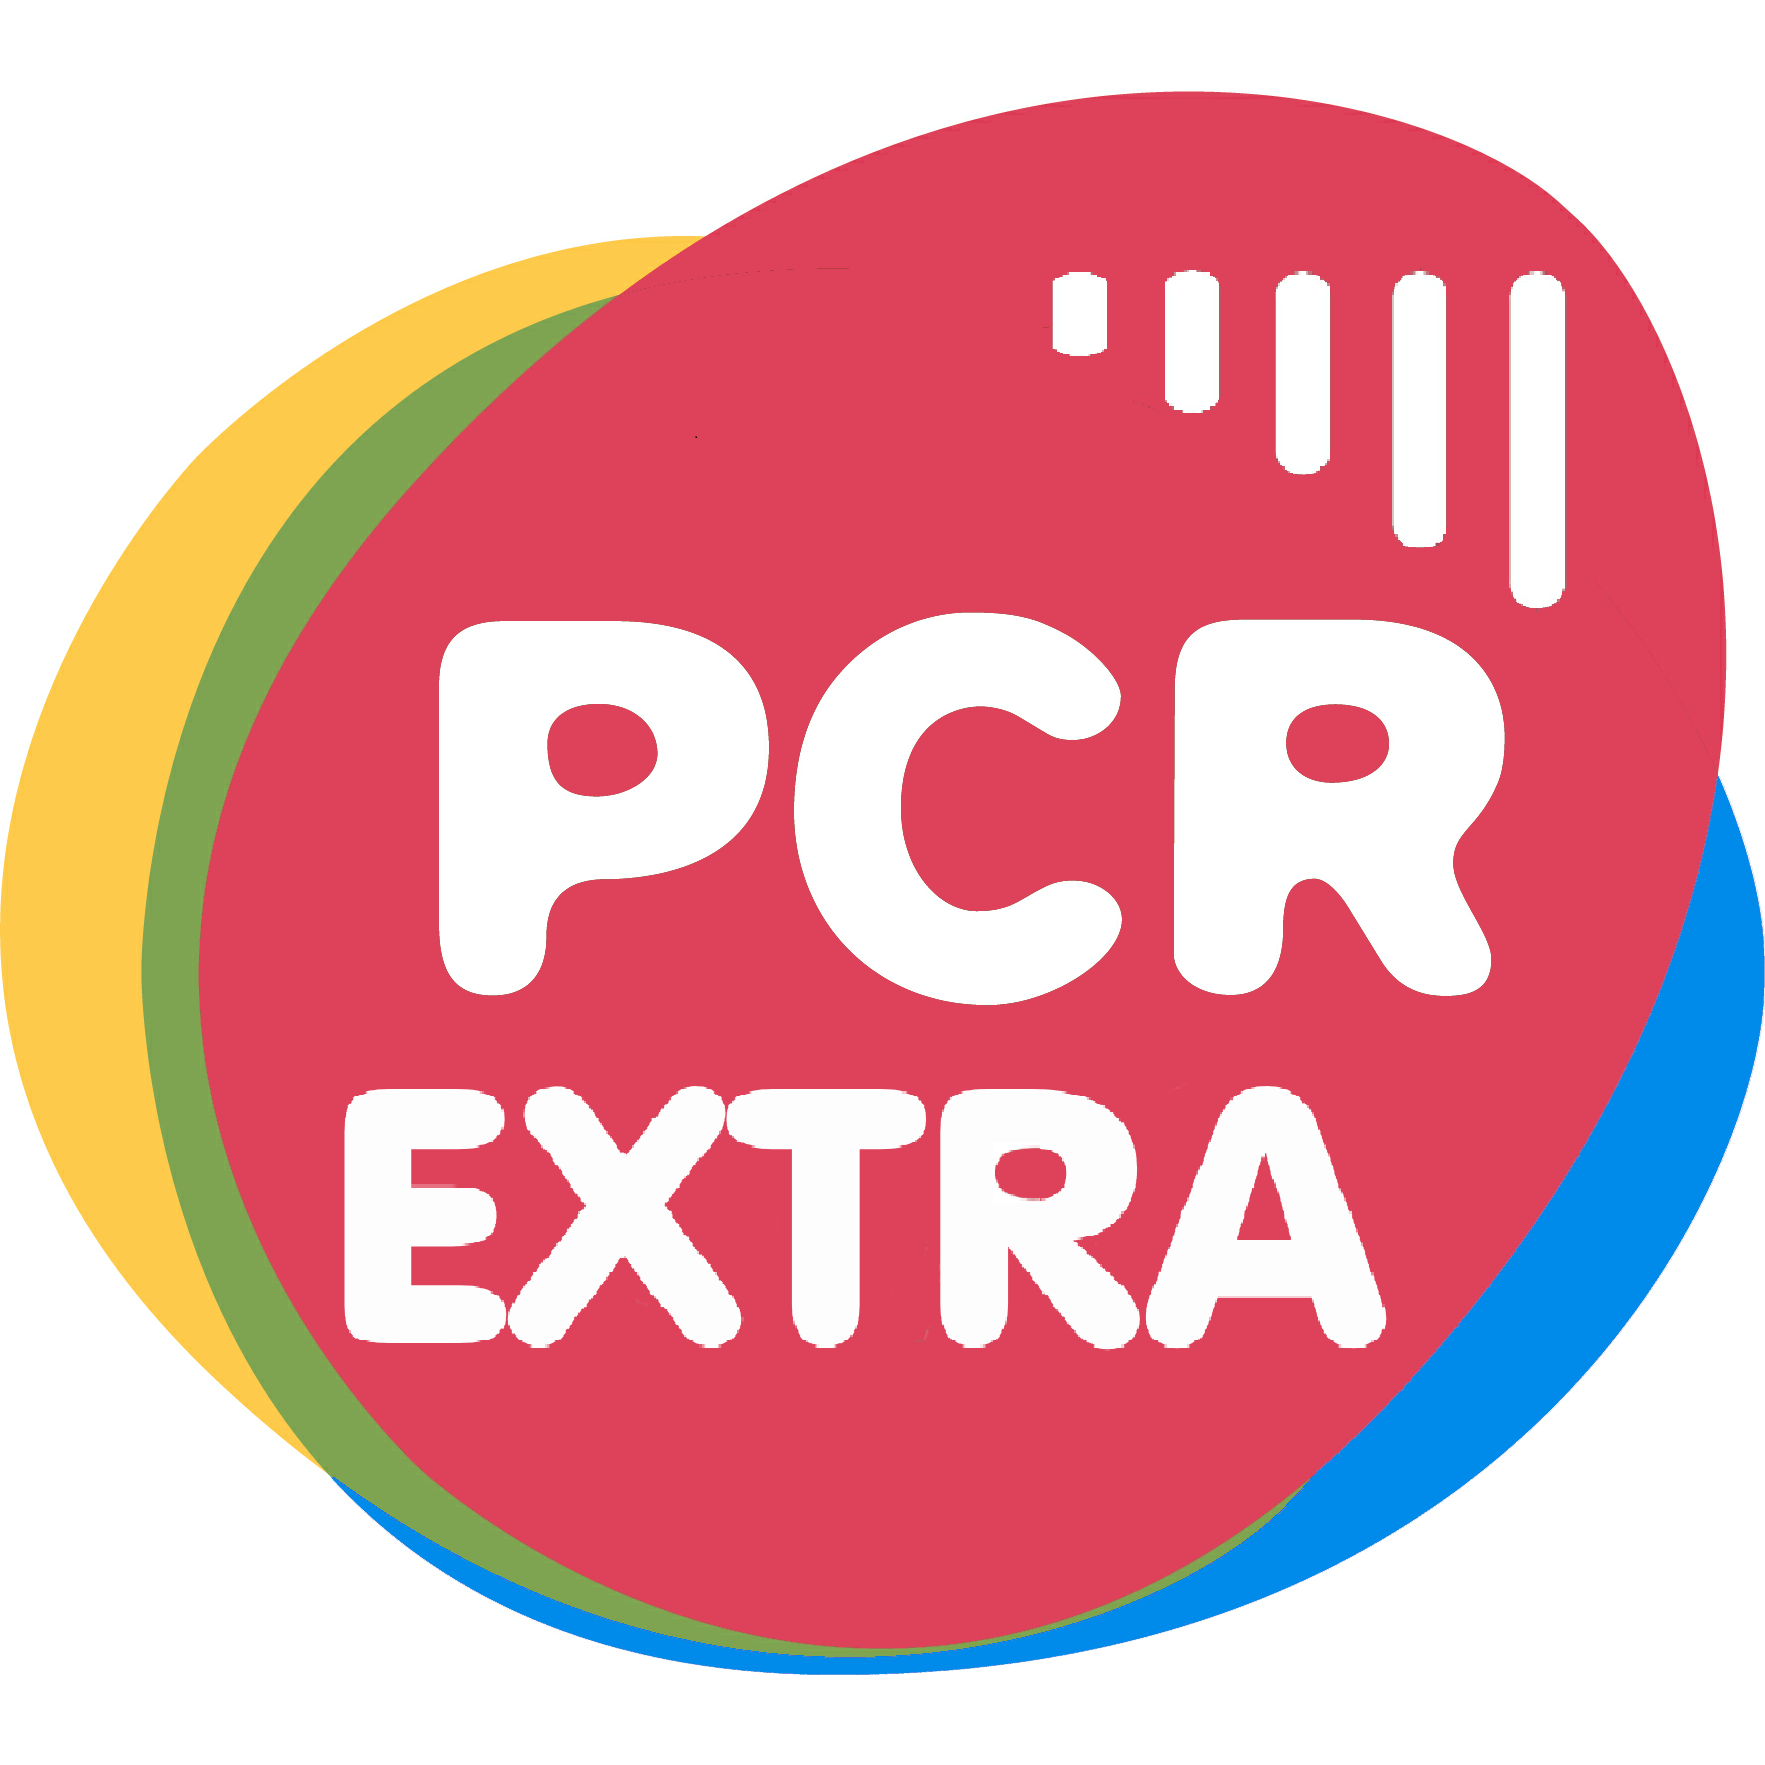 PCR Extra